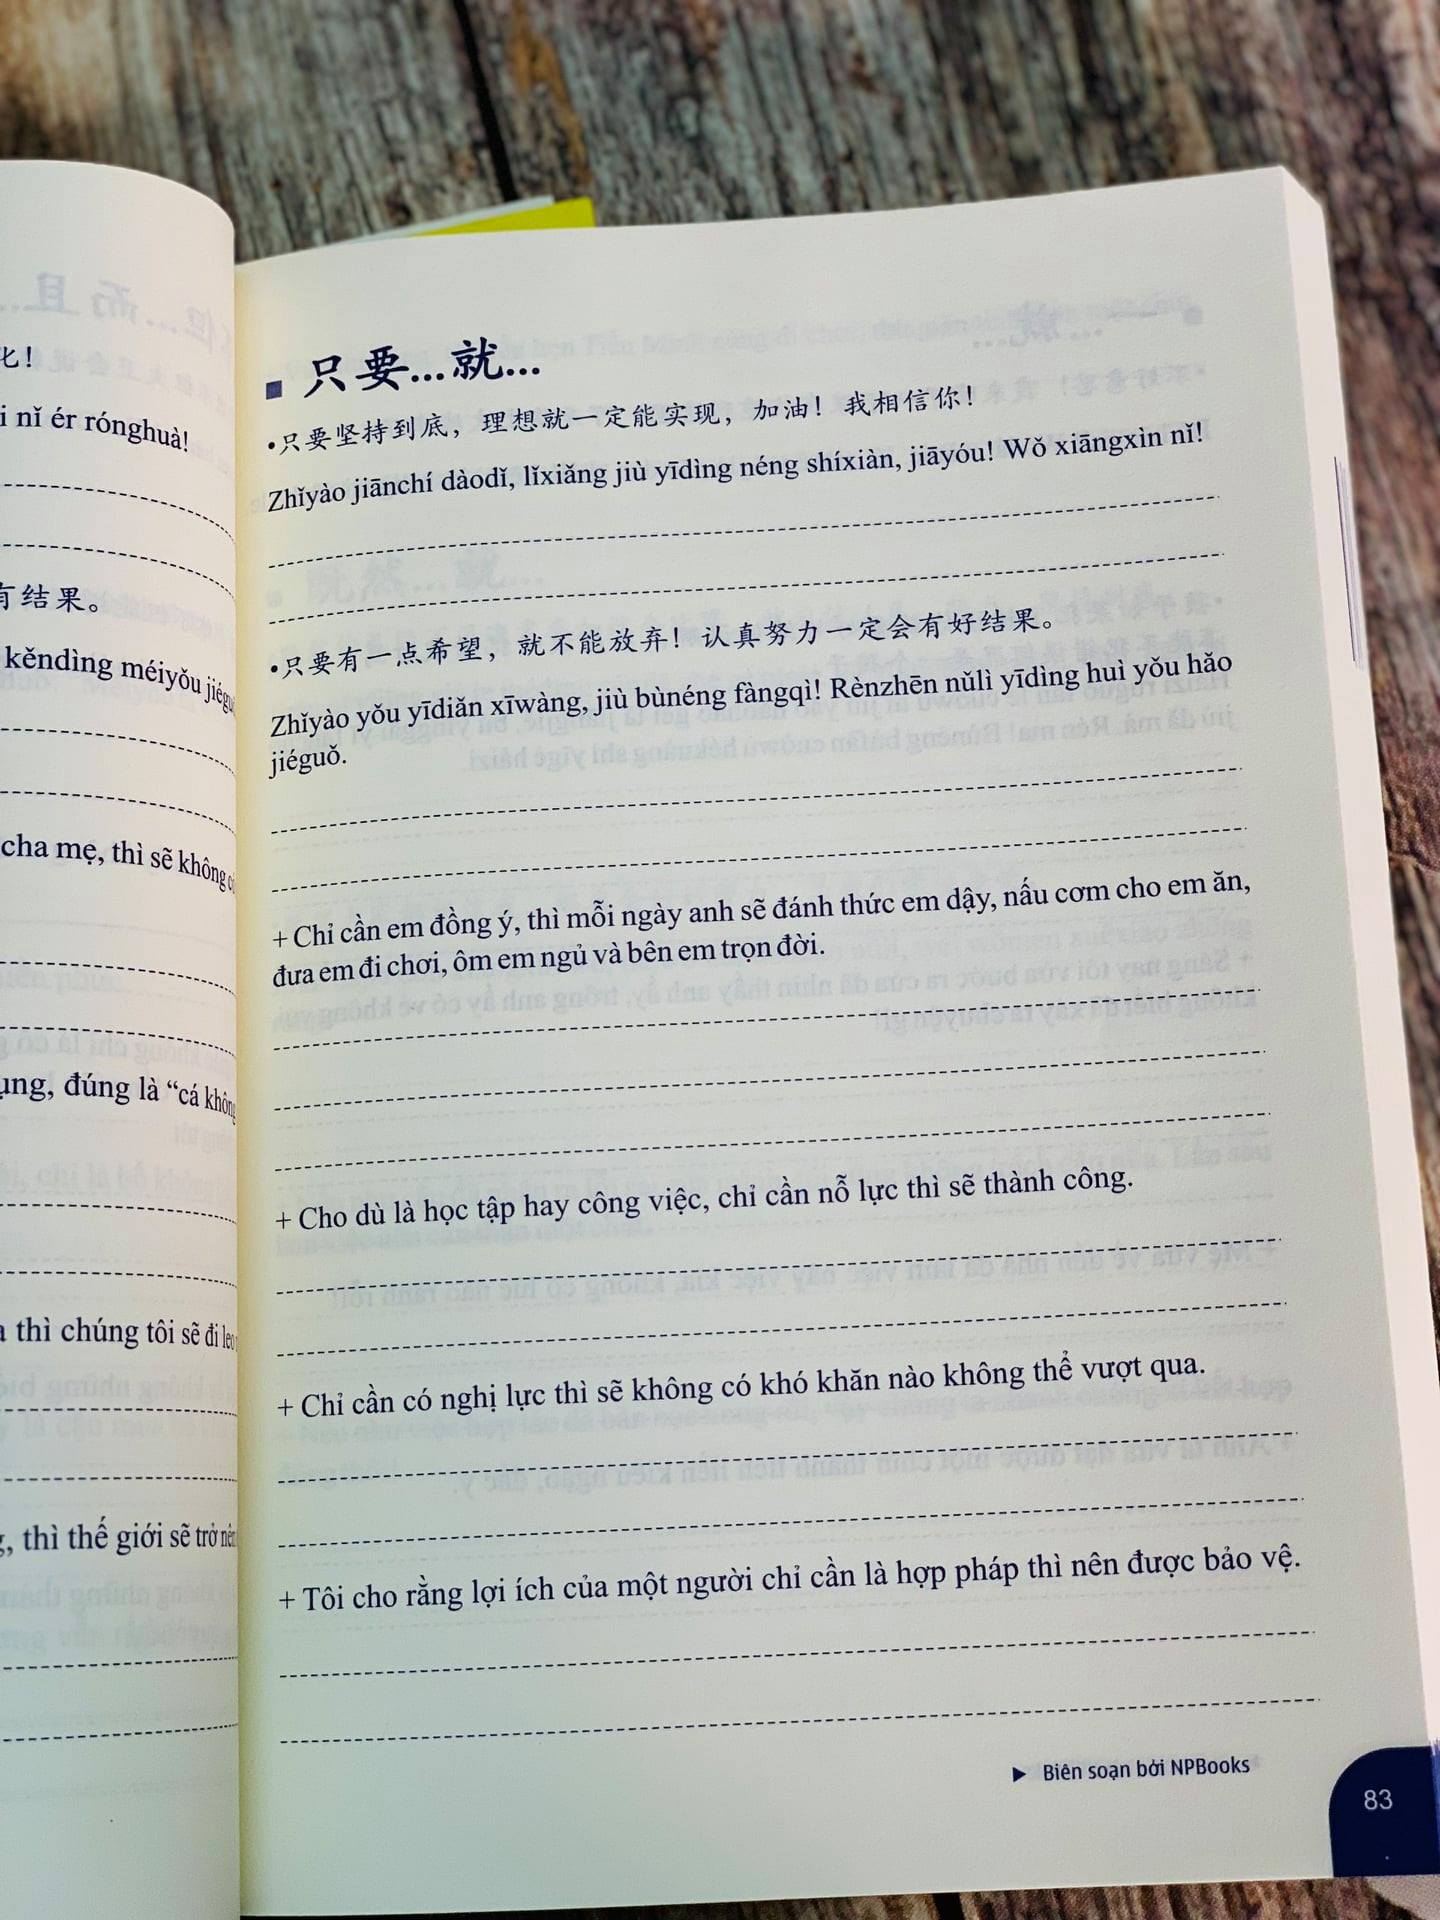 Sách- Combo 2 sách Bài tập luyện dịch tiếng Trung ứng dụng (Sơ -Trung cấp, Giao tiếp HSK có mp3 nghe, có đáp án)+ Make your Chinese map Bản đồ tư duy từ vựng Tiếng Trung theo chủ đề + DVD tài liệu